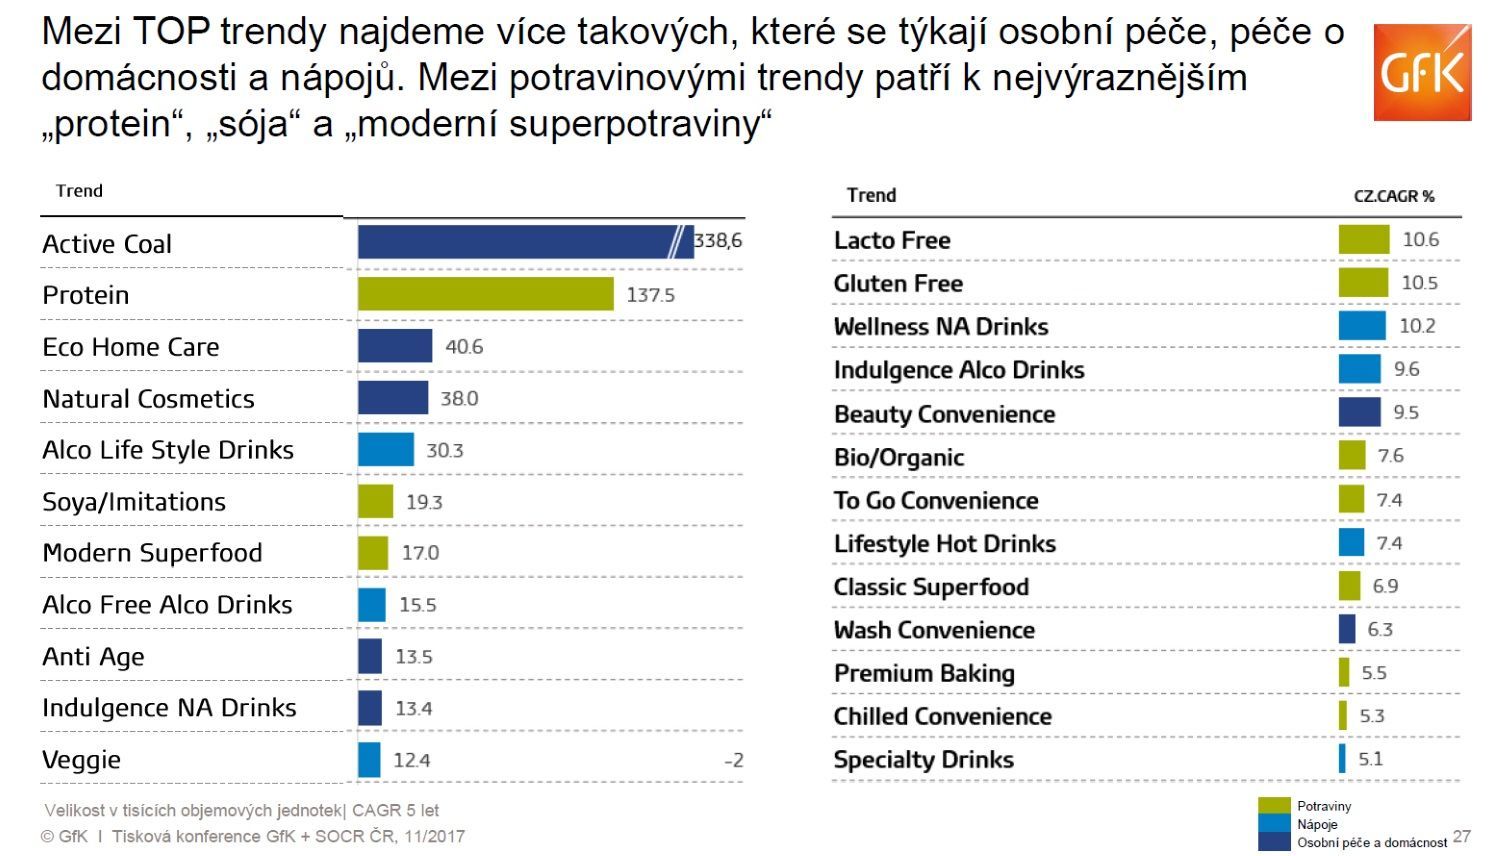 SOCR ČR GfK grafy nakupování trendy v nakupování obecně za kategorie zboží